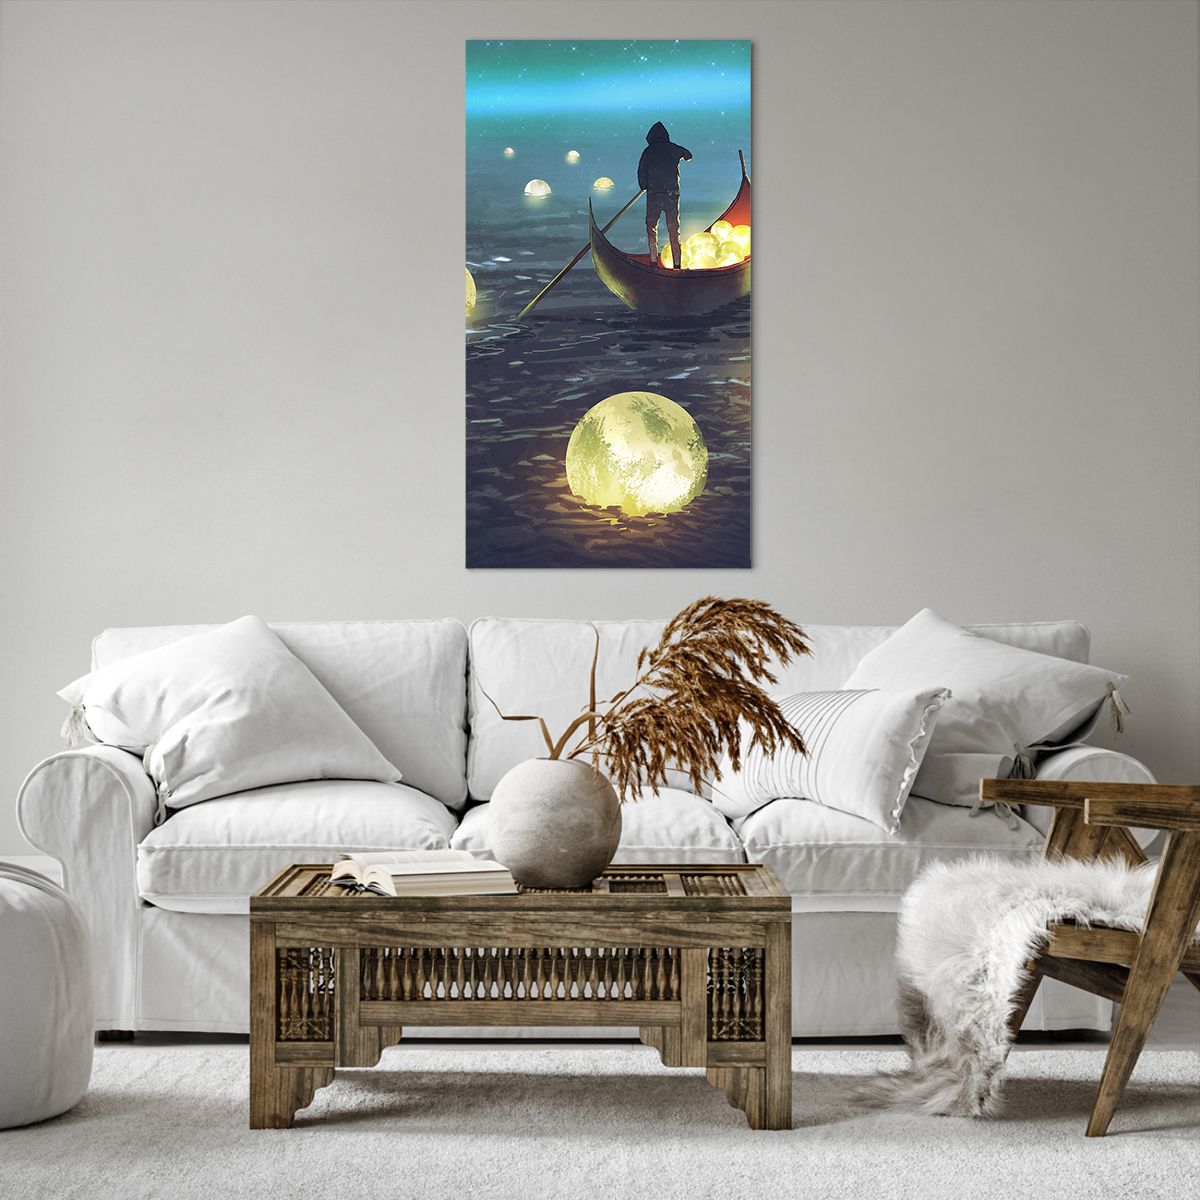 Bild auf Leinwand Abstraktion, Bild auf Leinwand Fantasie, Bild auf Leinwand Boot, Bild auf Leinwand Fischer, Bild auf Leinwand Mond